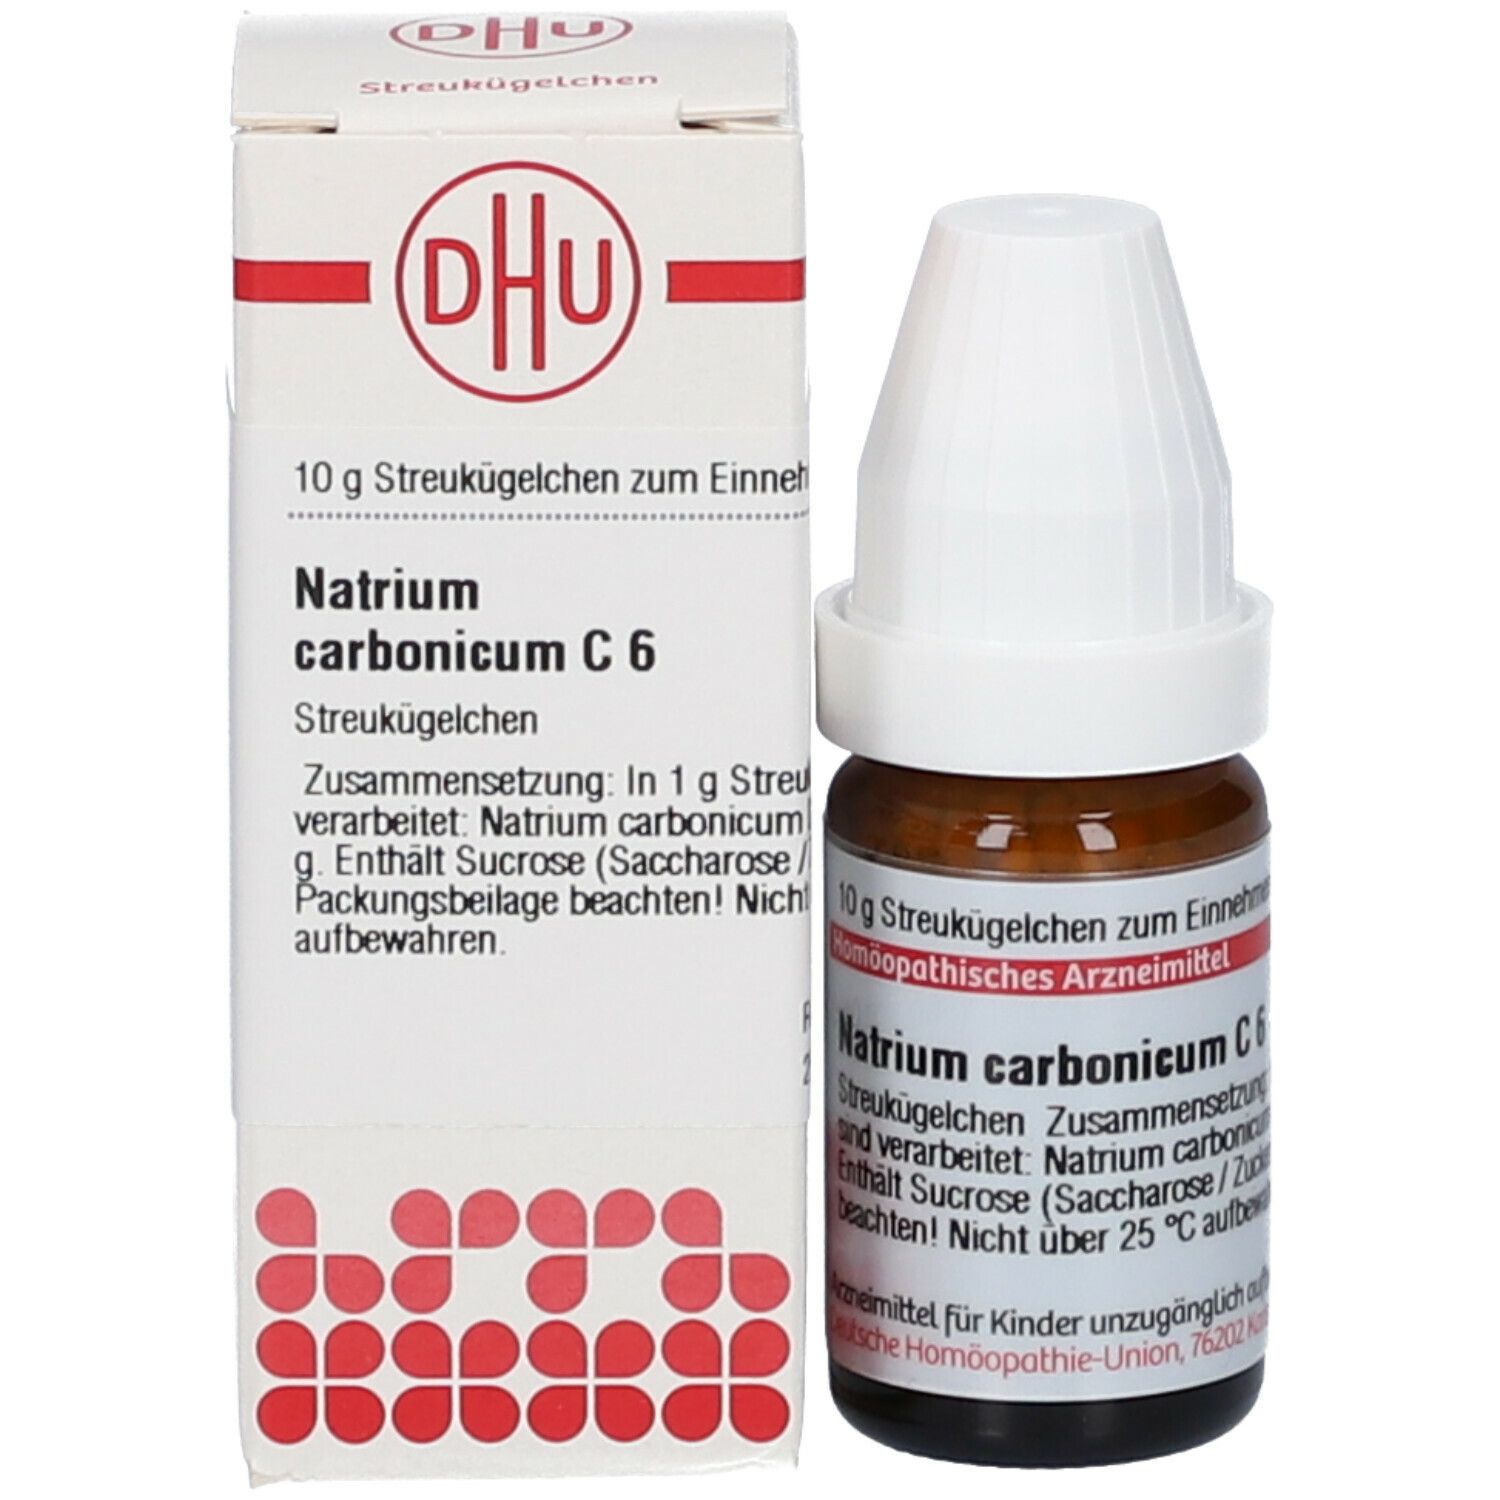 DHU Natrium Carbonicum C6